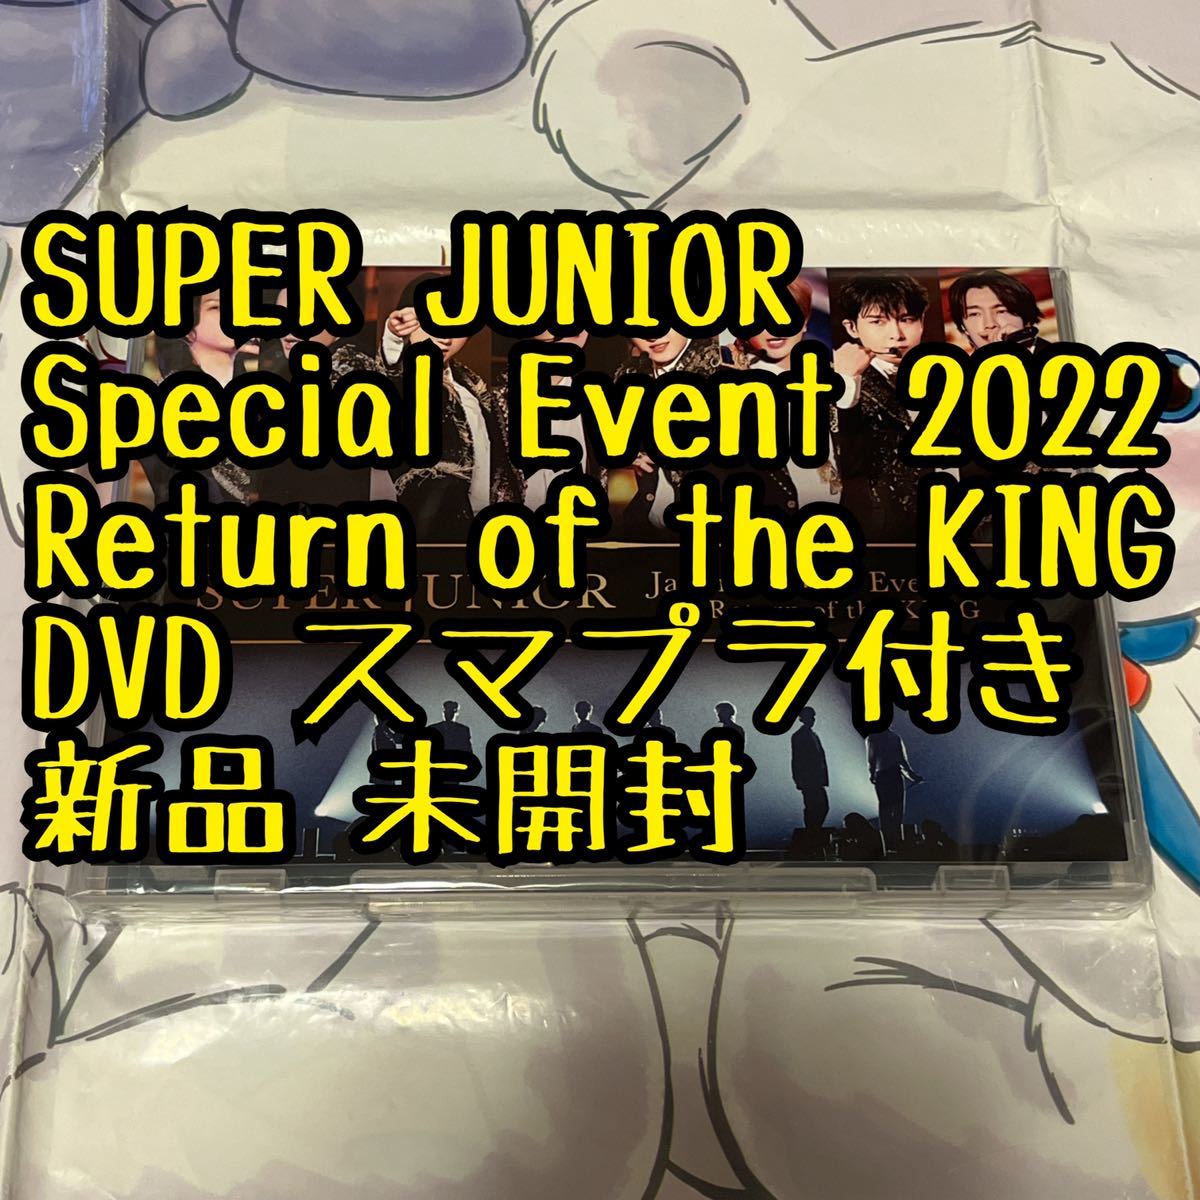 新品 未開封 DVD スマプラ付き Return of the KING 日本 SUPER JUNIOR SJ 公式グッズ トレカ イトゥク イェソン  ウニョク ドンへ ドンヘ